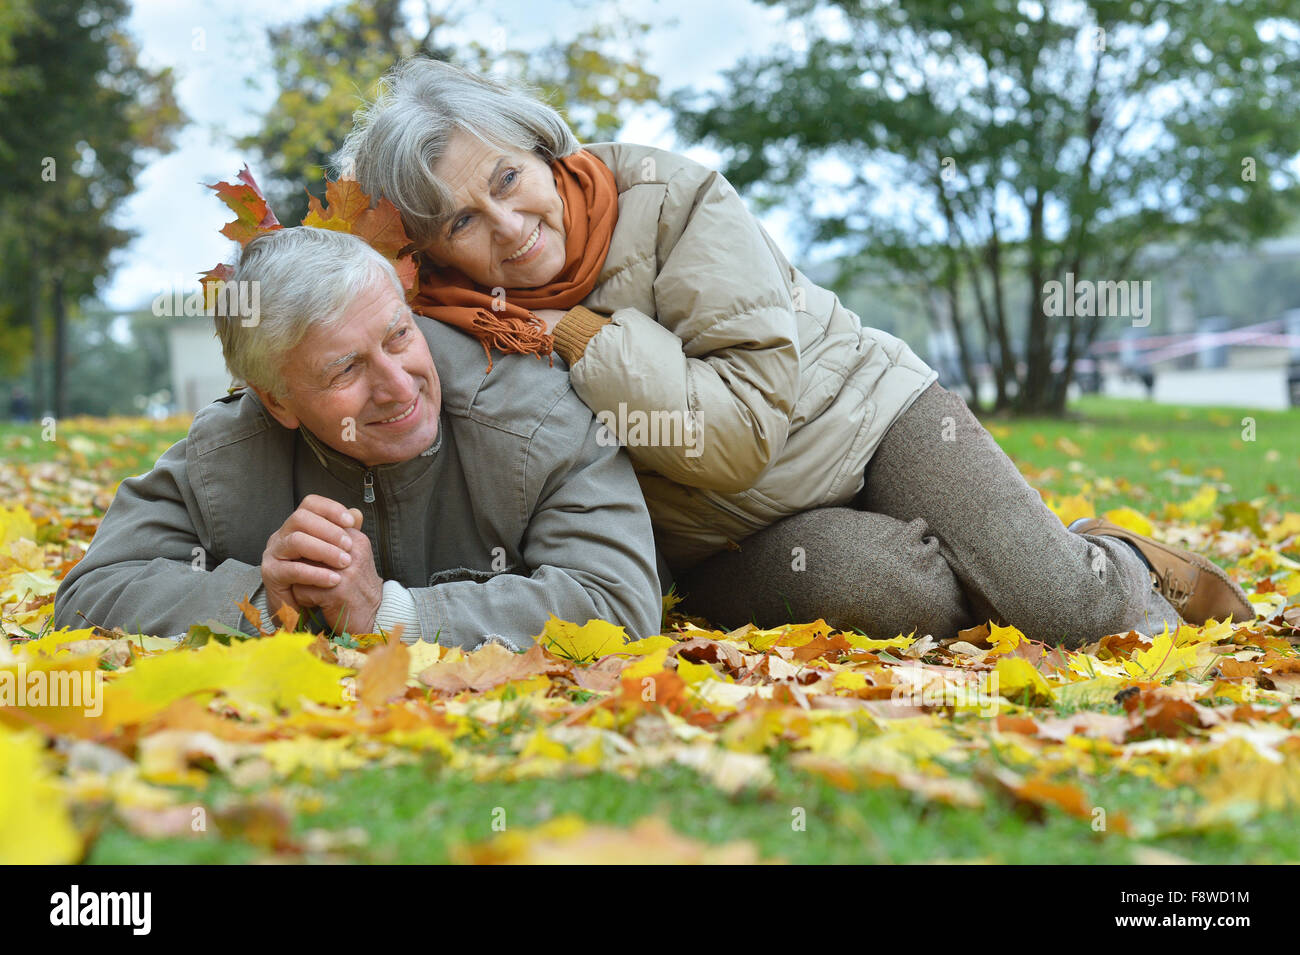 Elderly couple sitting in autumn nature Stock Photo